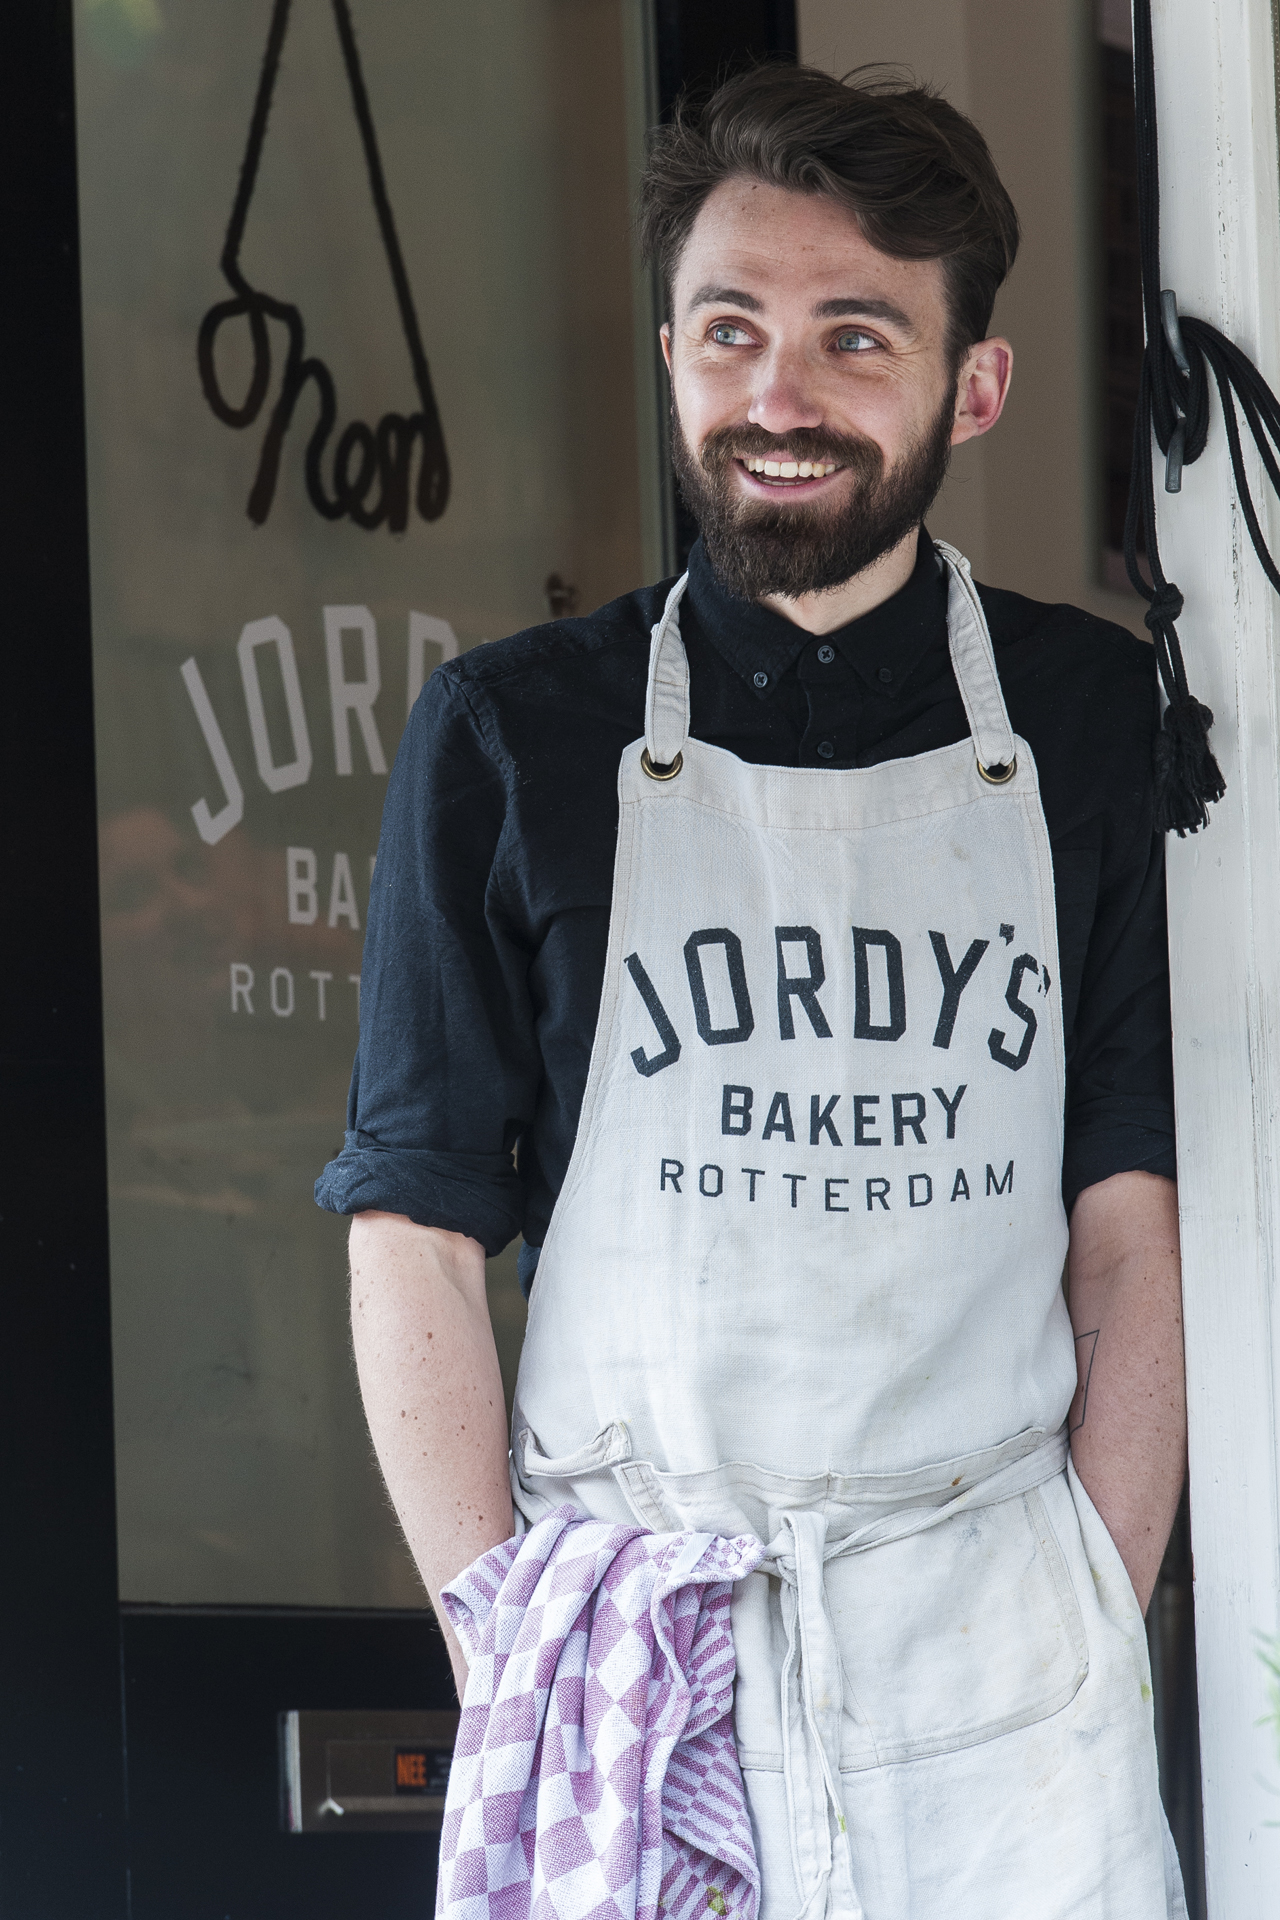 Jordy's Bakery Rotterdam